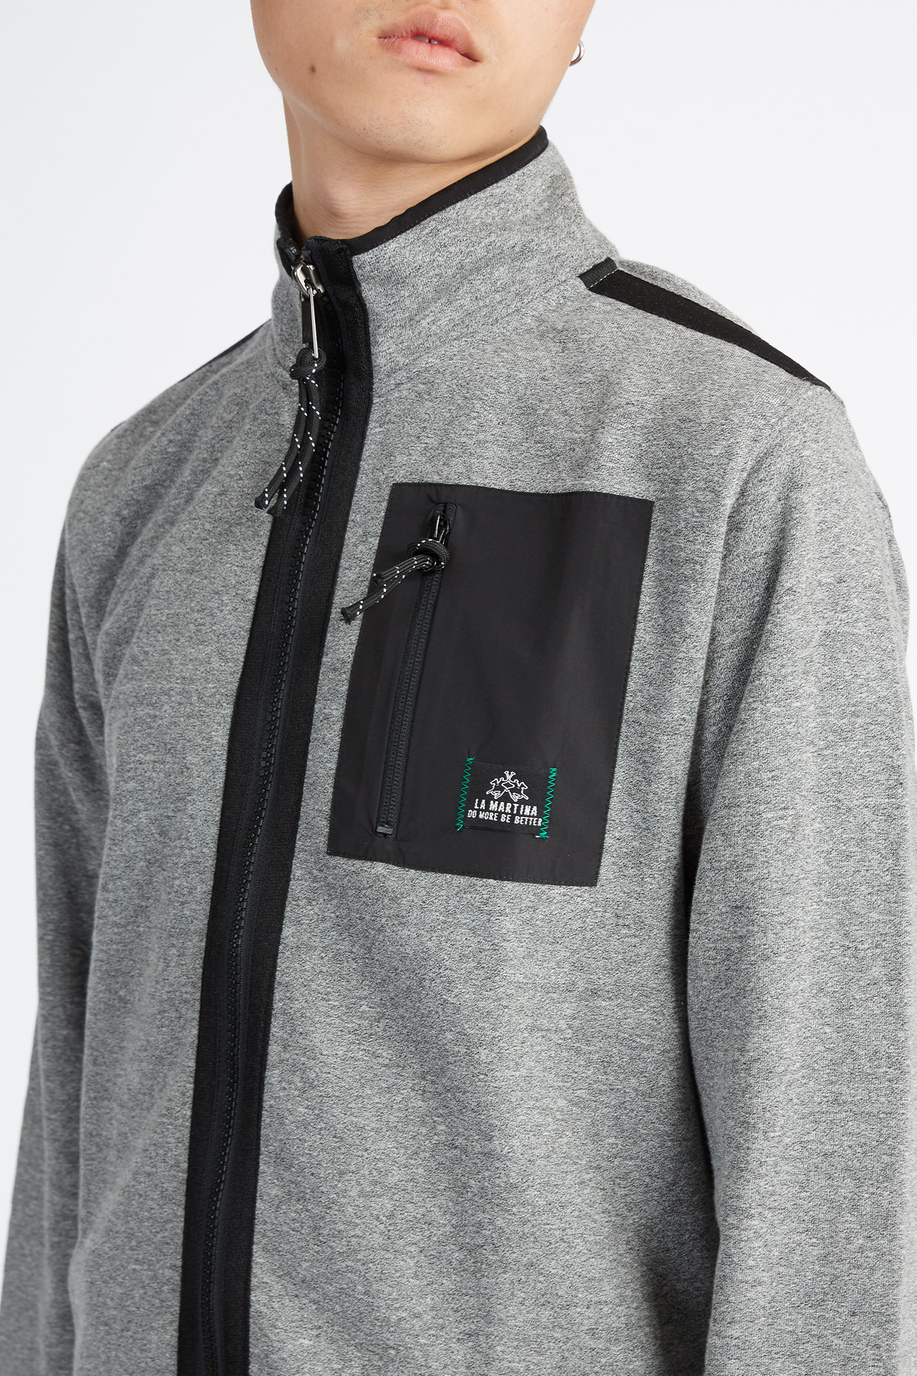 Zweifarbiges Herren-Kapsel-Sweatshirt mit Logos, Stehkragen, durchgehendem Reißverschluss und Fronttasche – Vani - Sweatshirts | La Martina - Official Online Shop